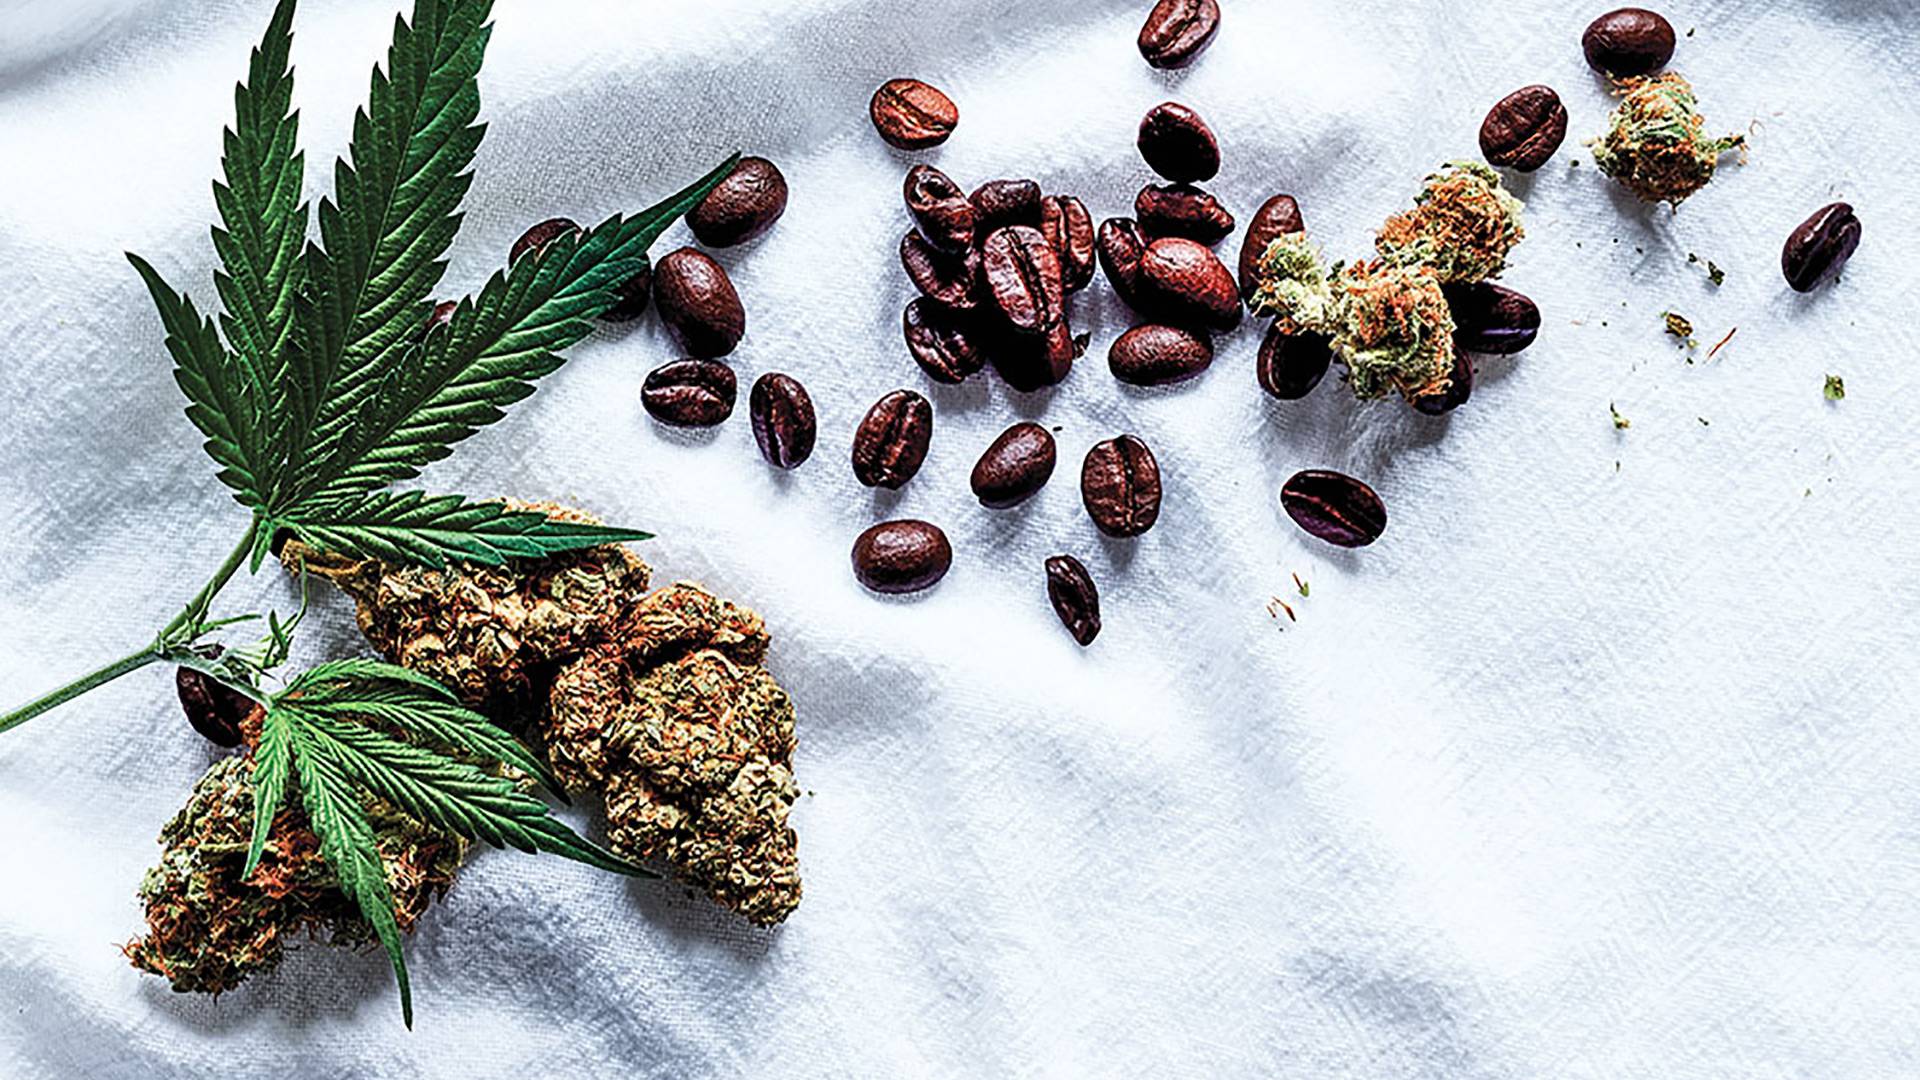 Cannabis and coffee